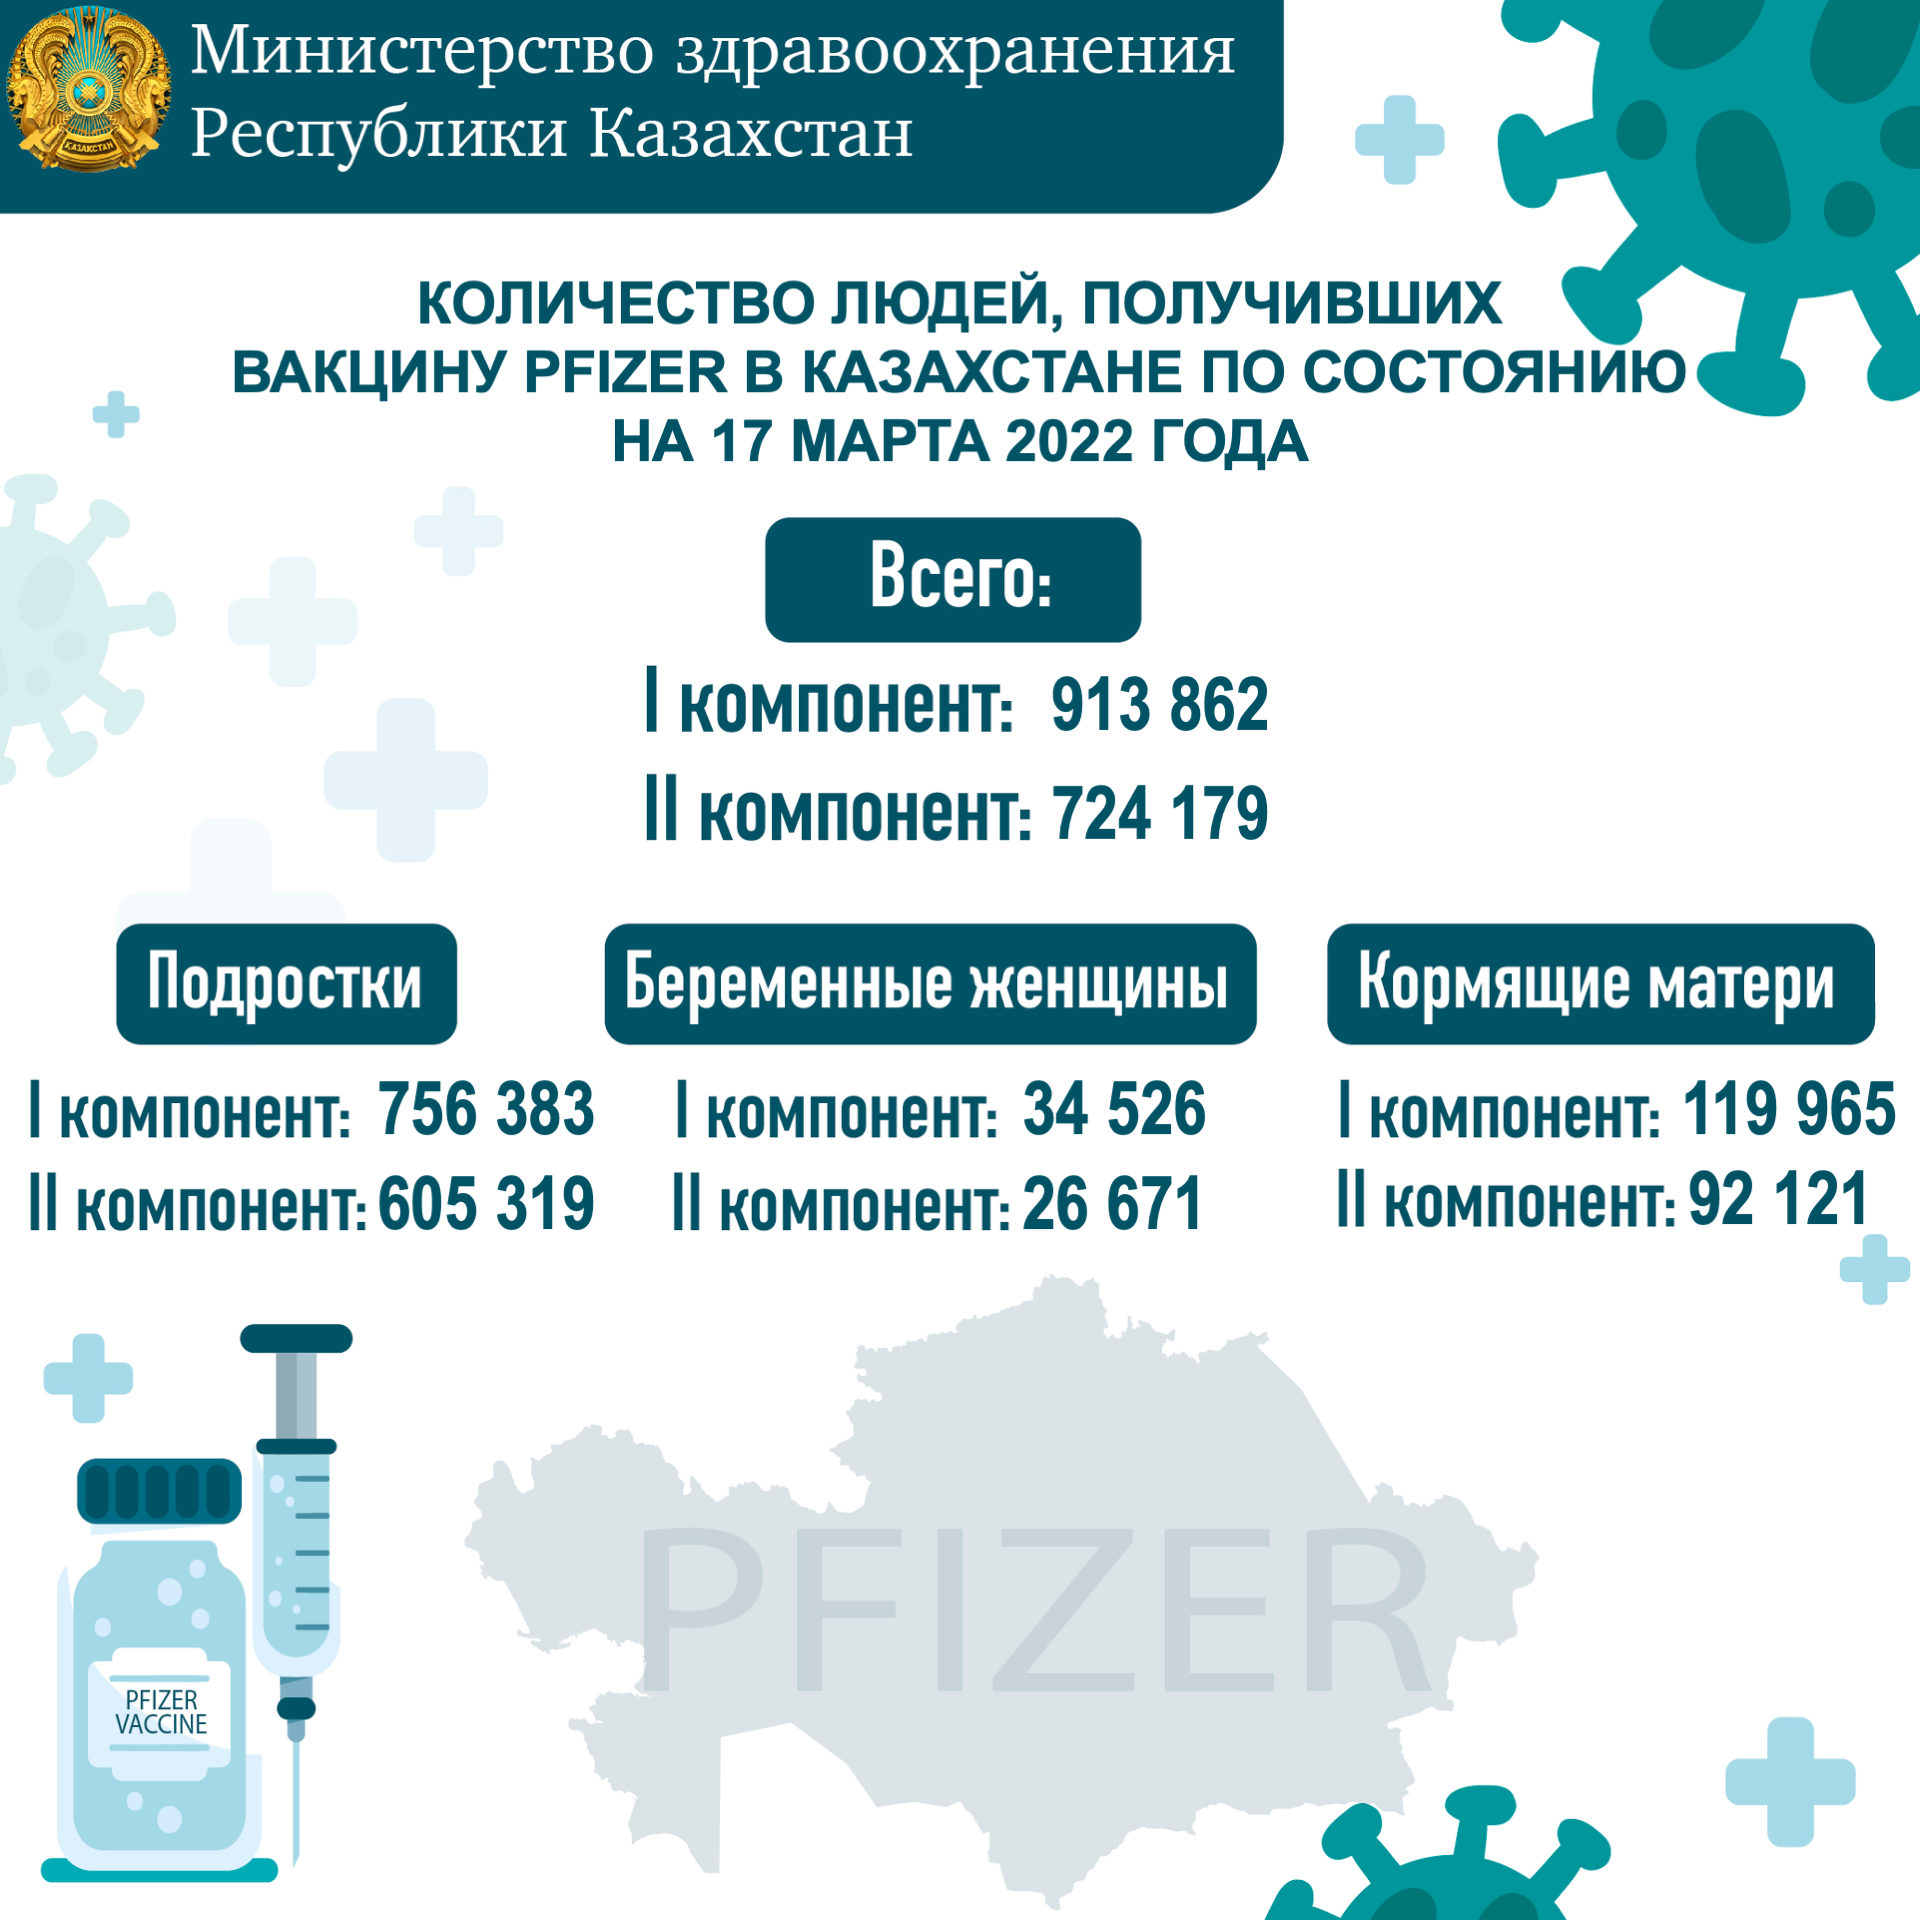 Количество людей, получивших вакцину PFIZER в Казахстане по состоянию на 17 марта 2022 года